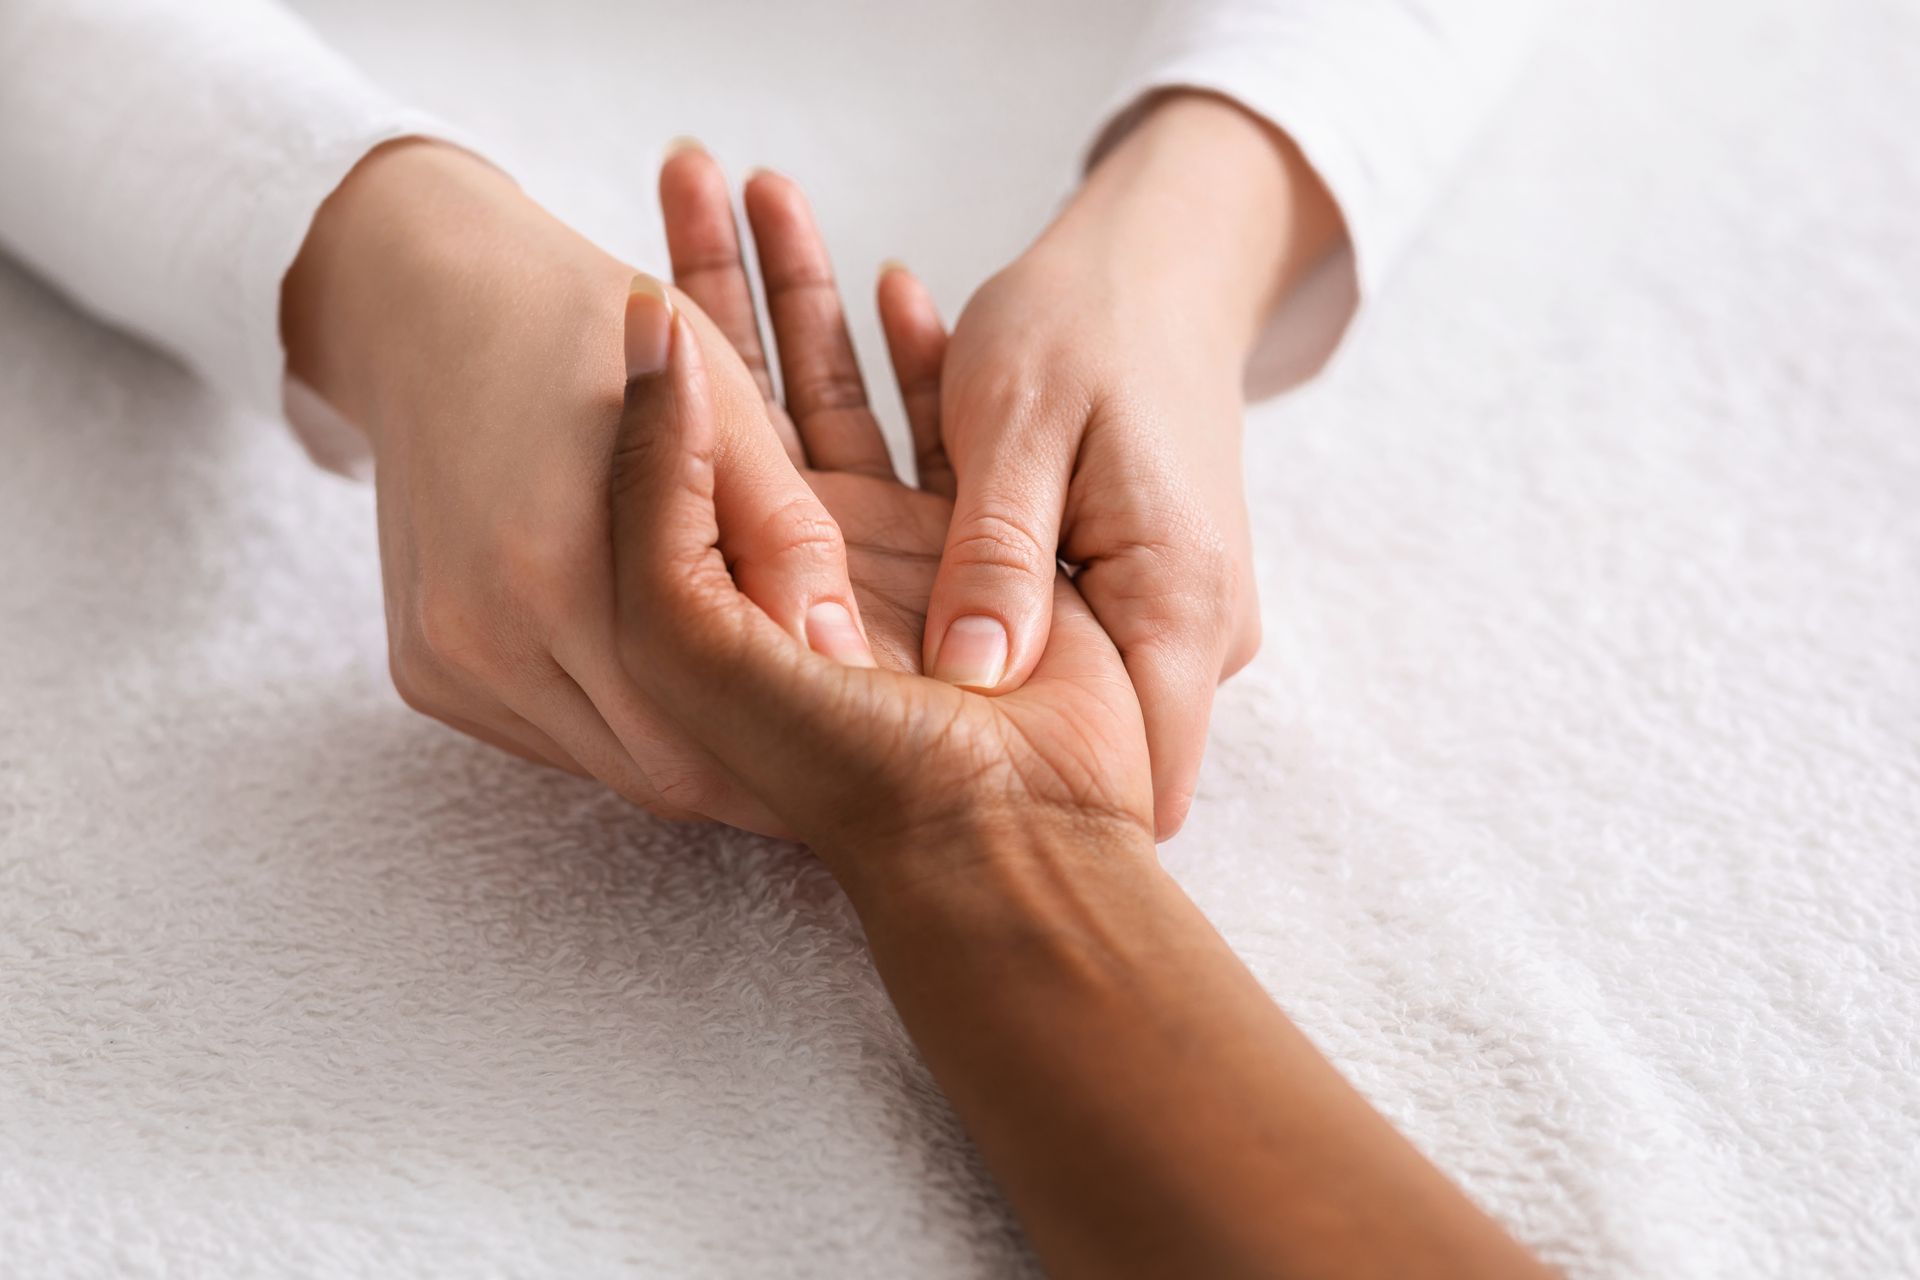 hand massage